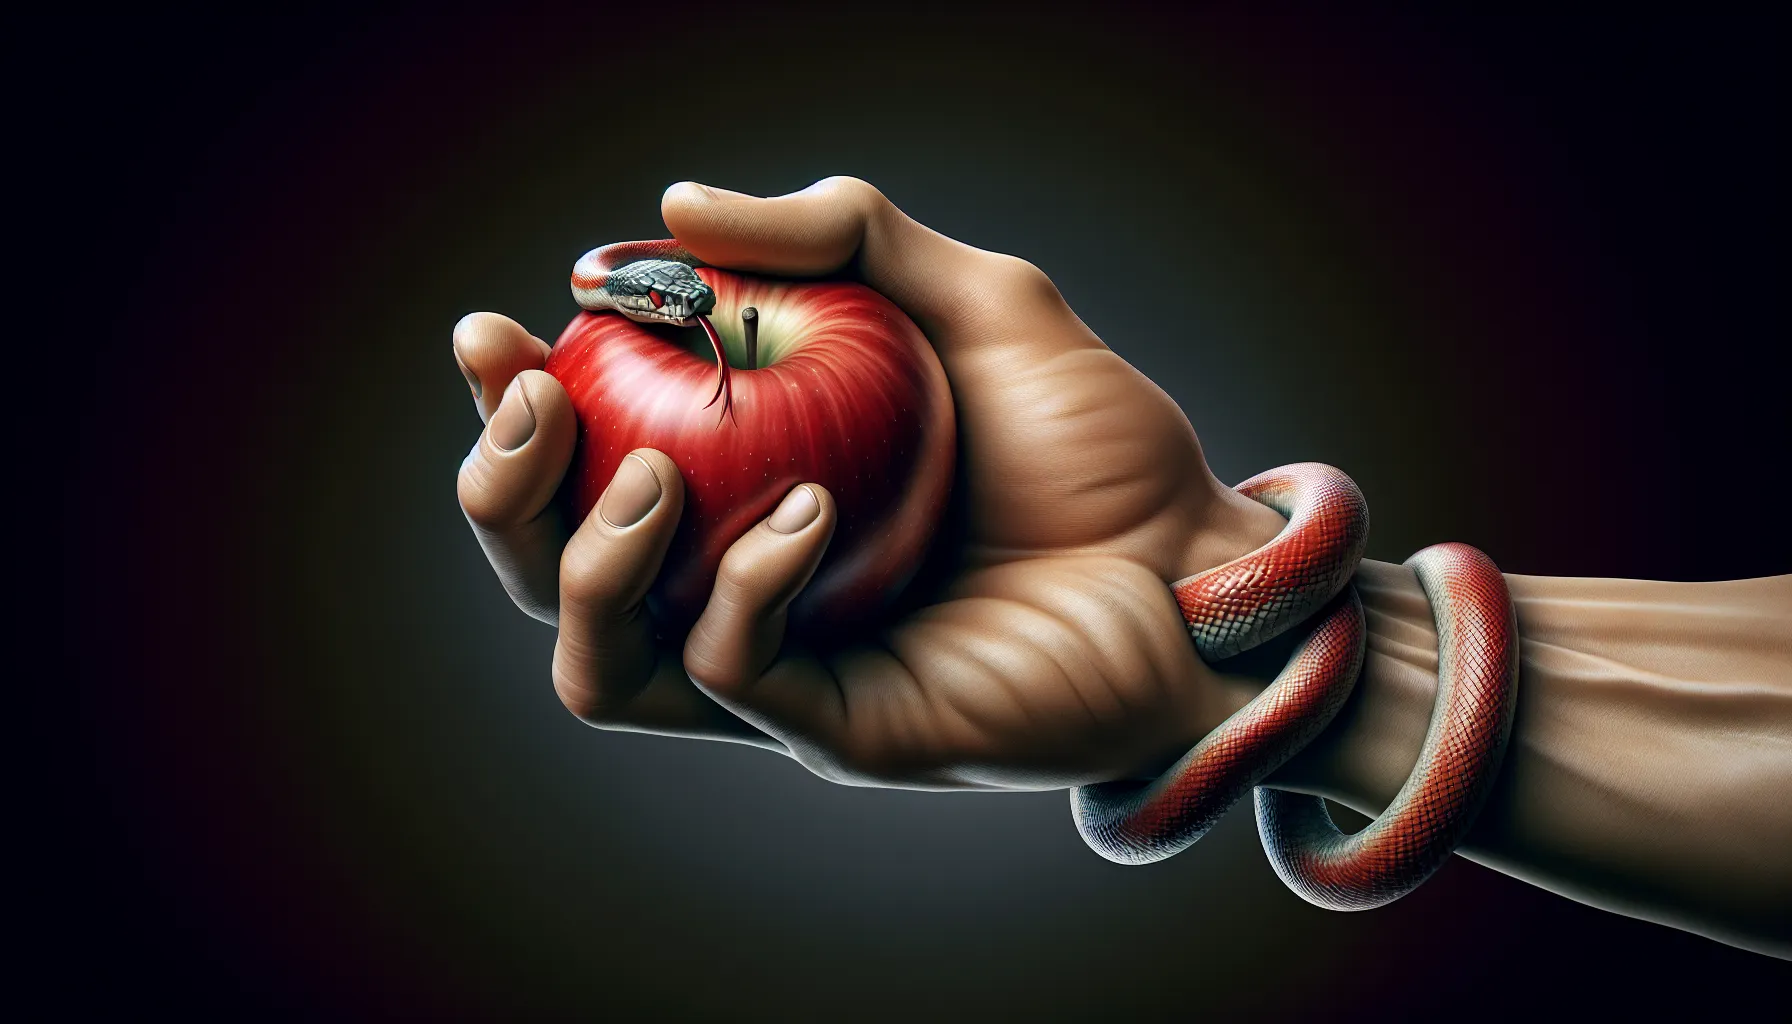 Una mano sujetando una manzana roja tentadora